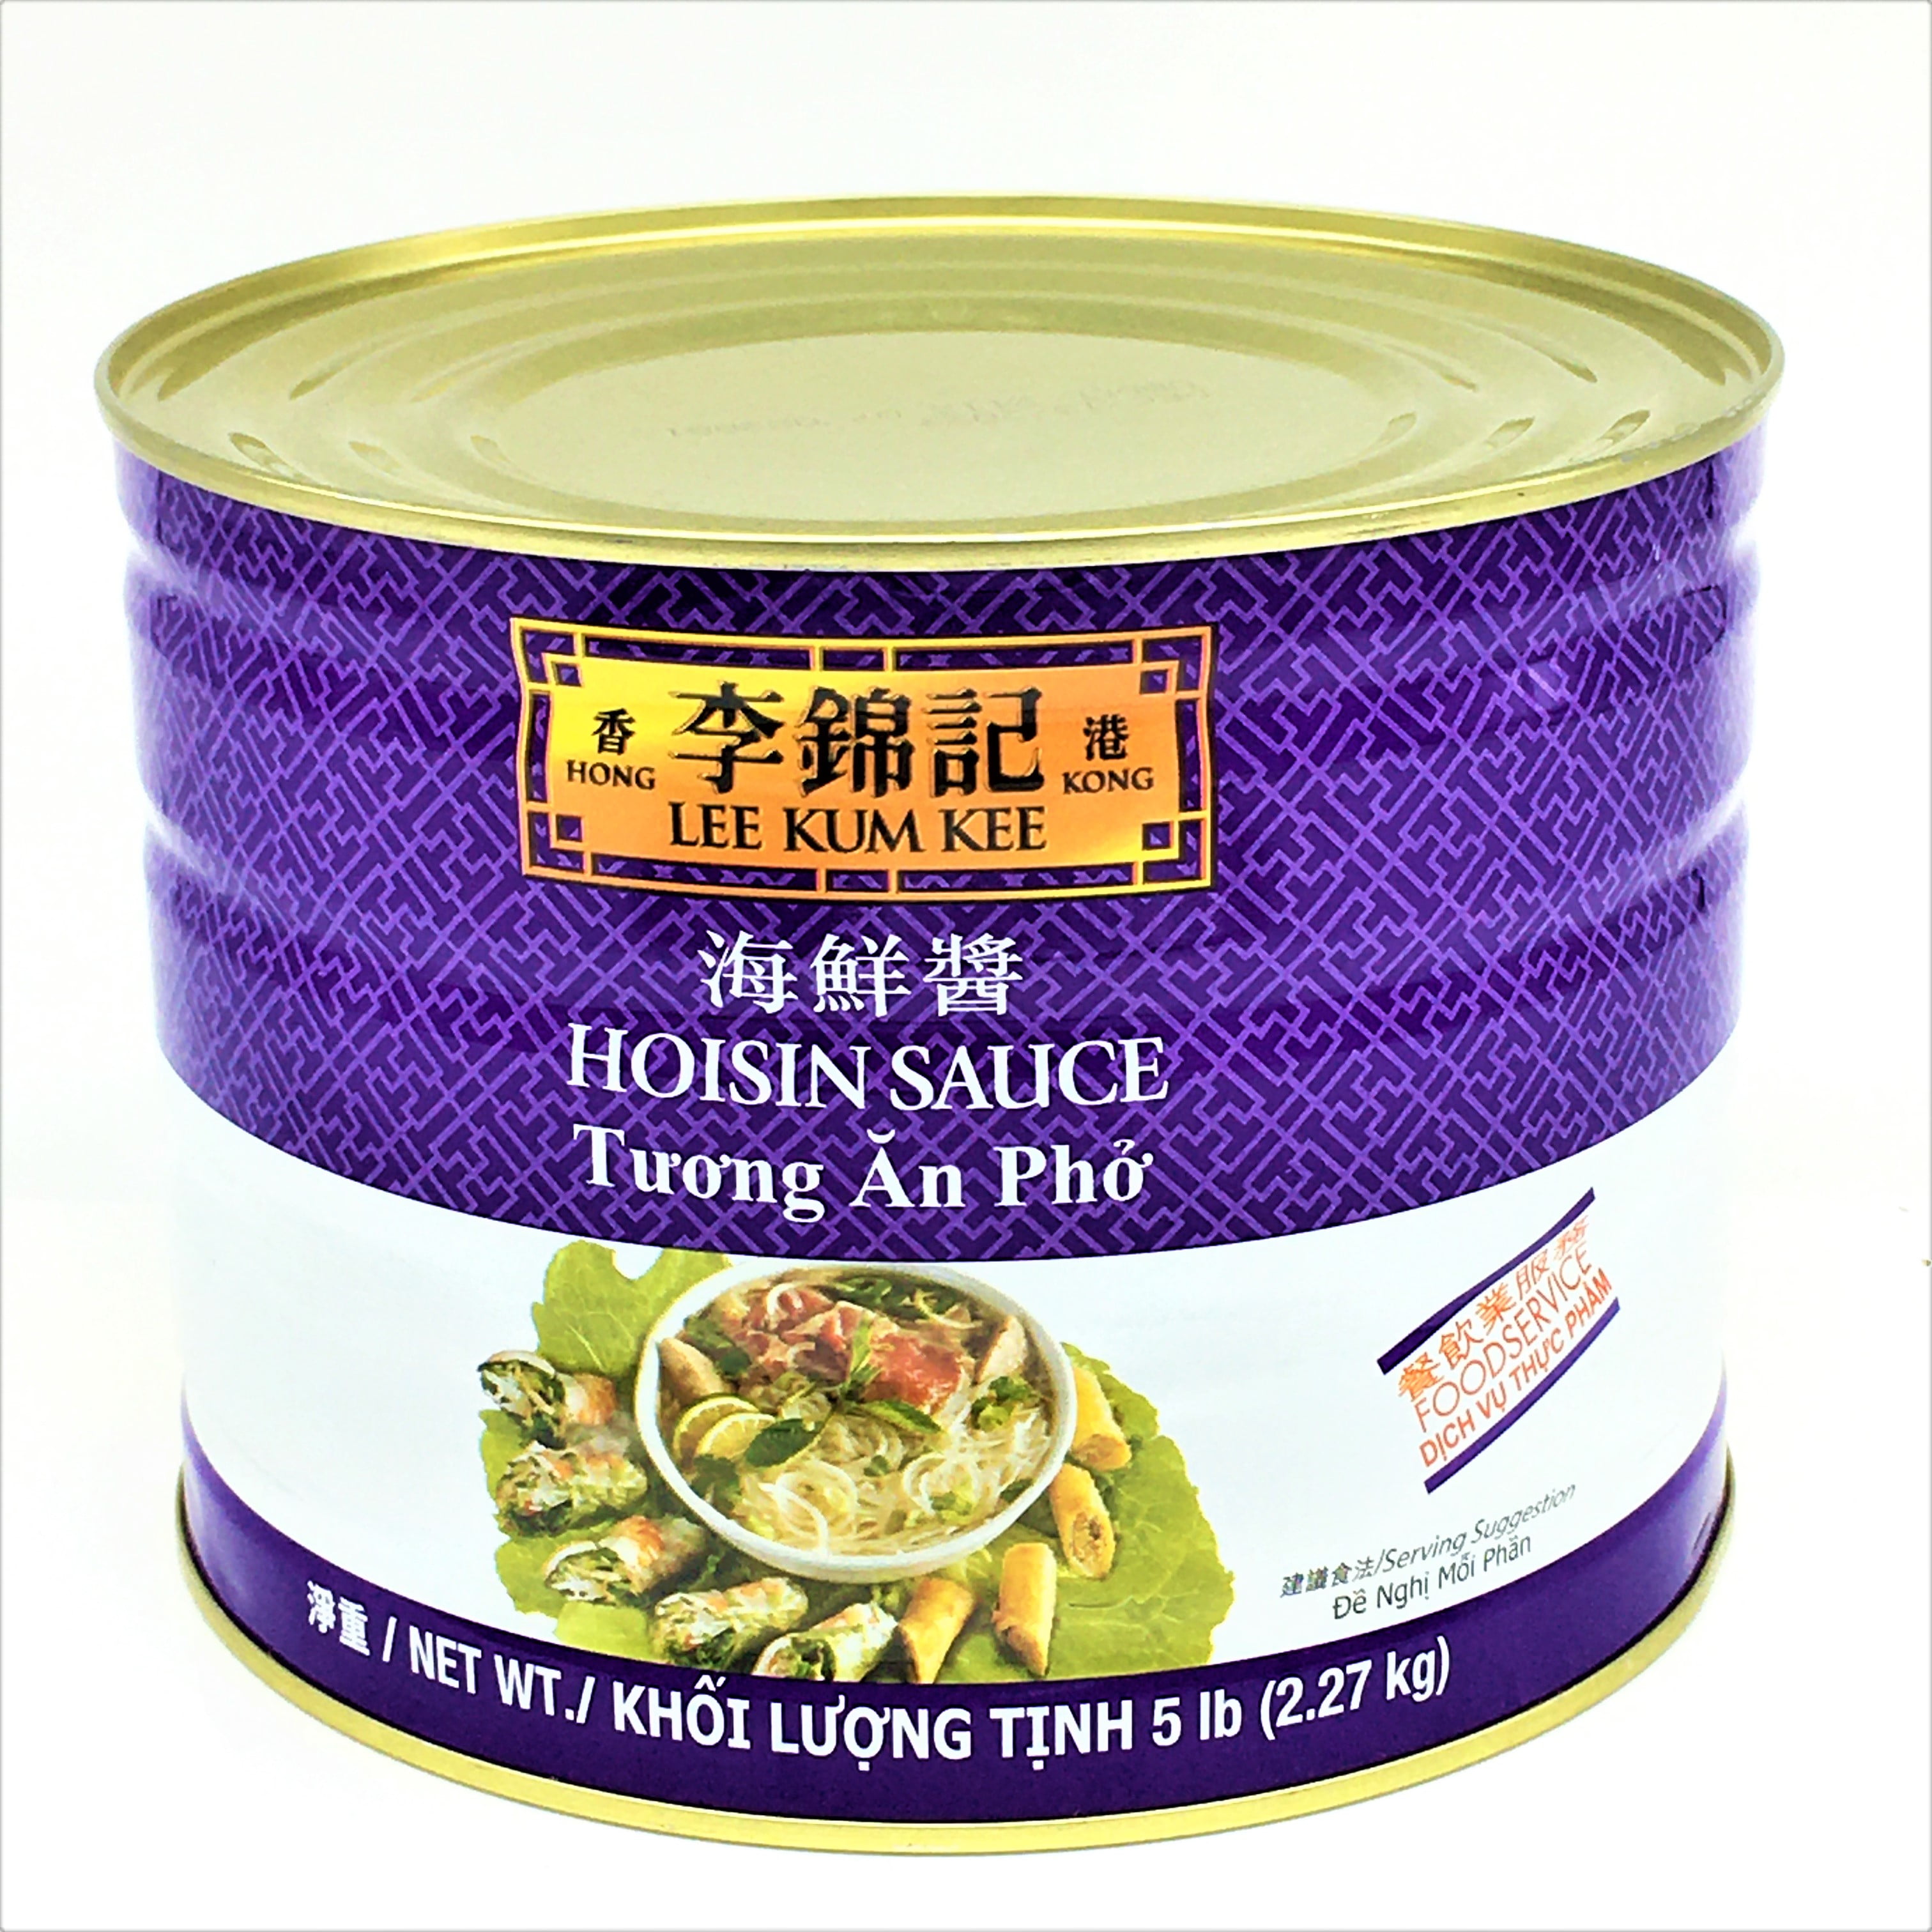 Lee Kum Kee - Hoisin Sauce - 2,27kg